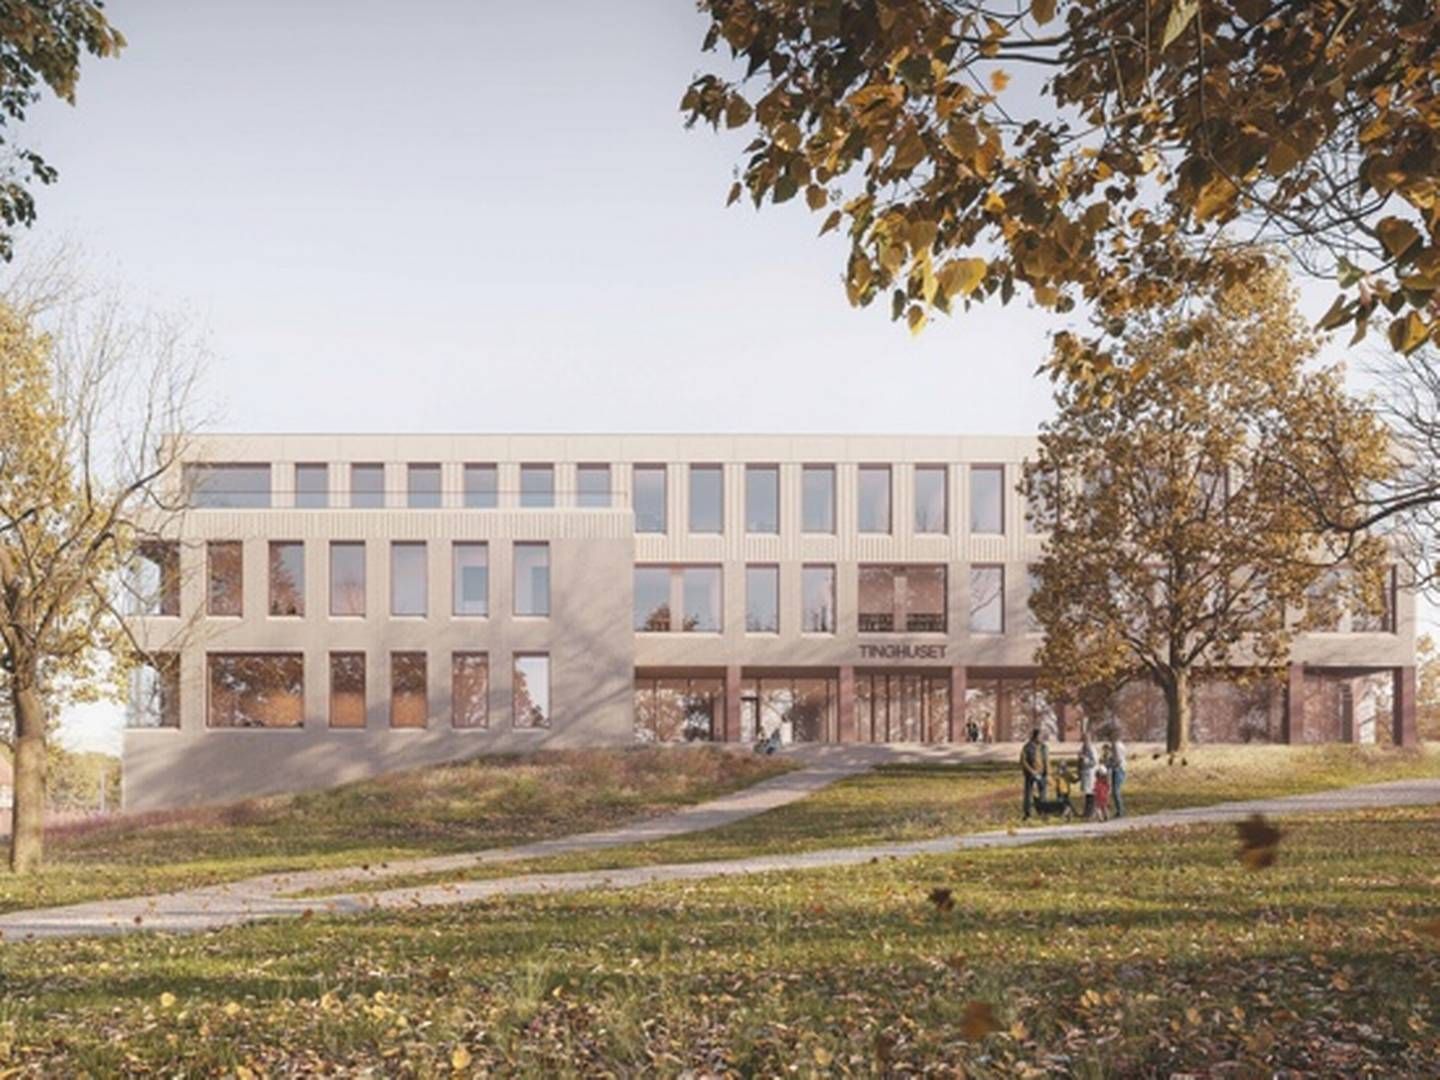 NYTT TINGHUS: Slik blir det nye tinghuset i Tønsberg seende ut, når det er klart. | Photo: Dyrvik Arkitekter